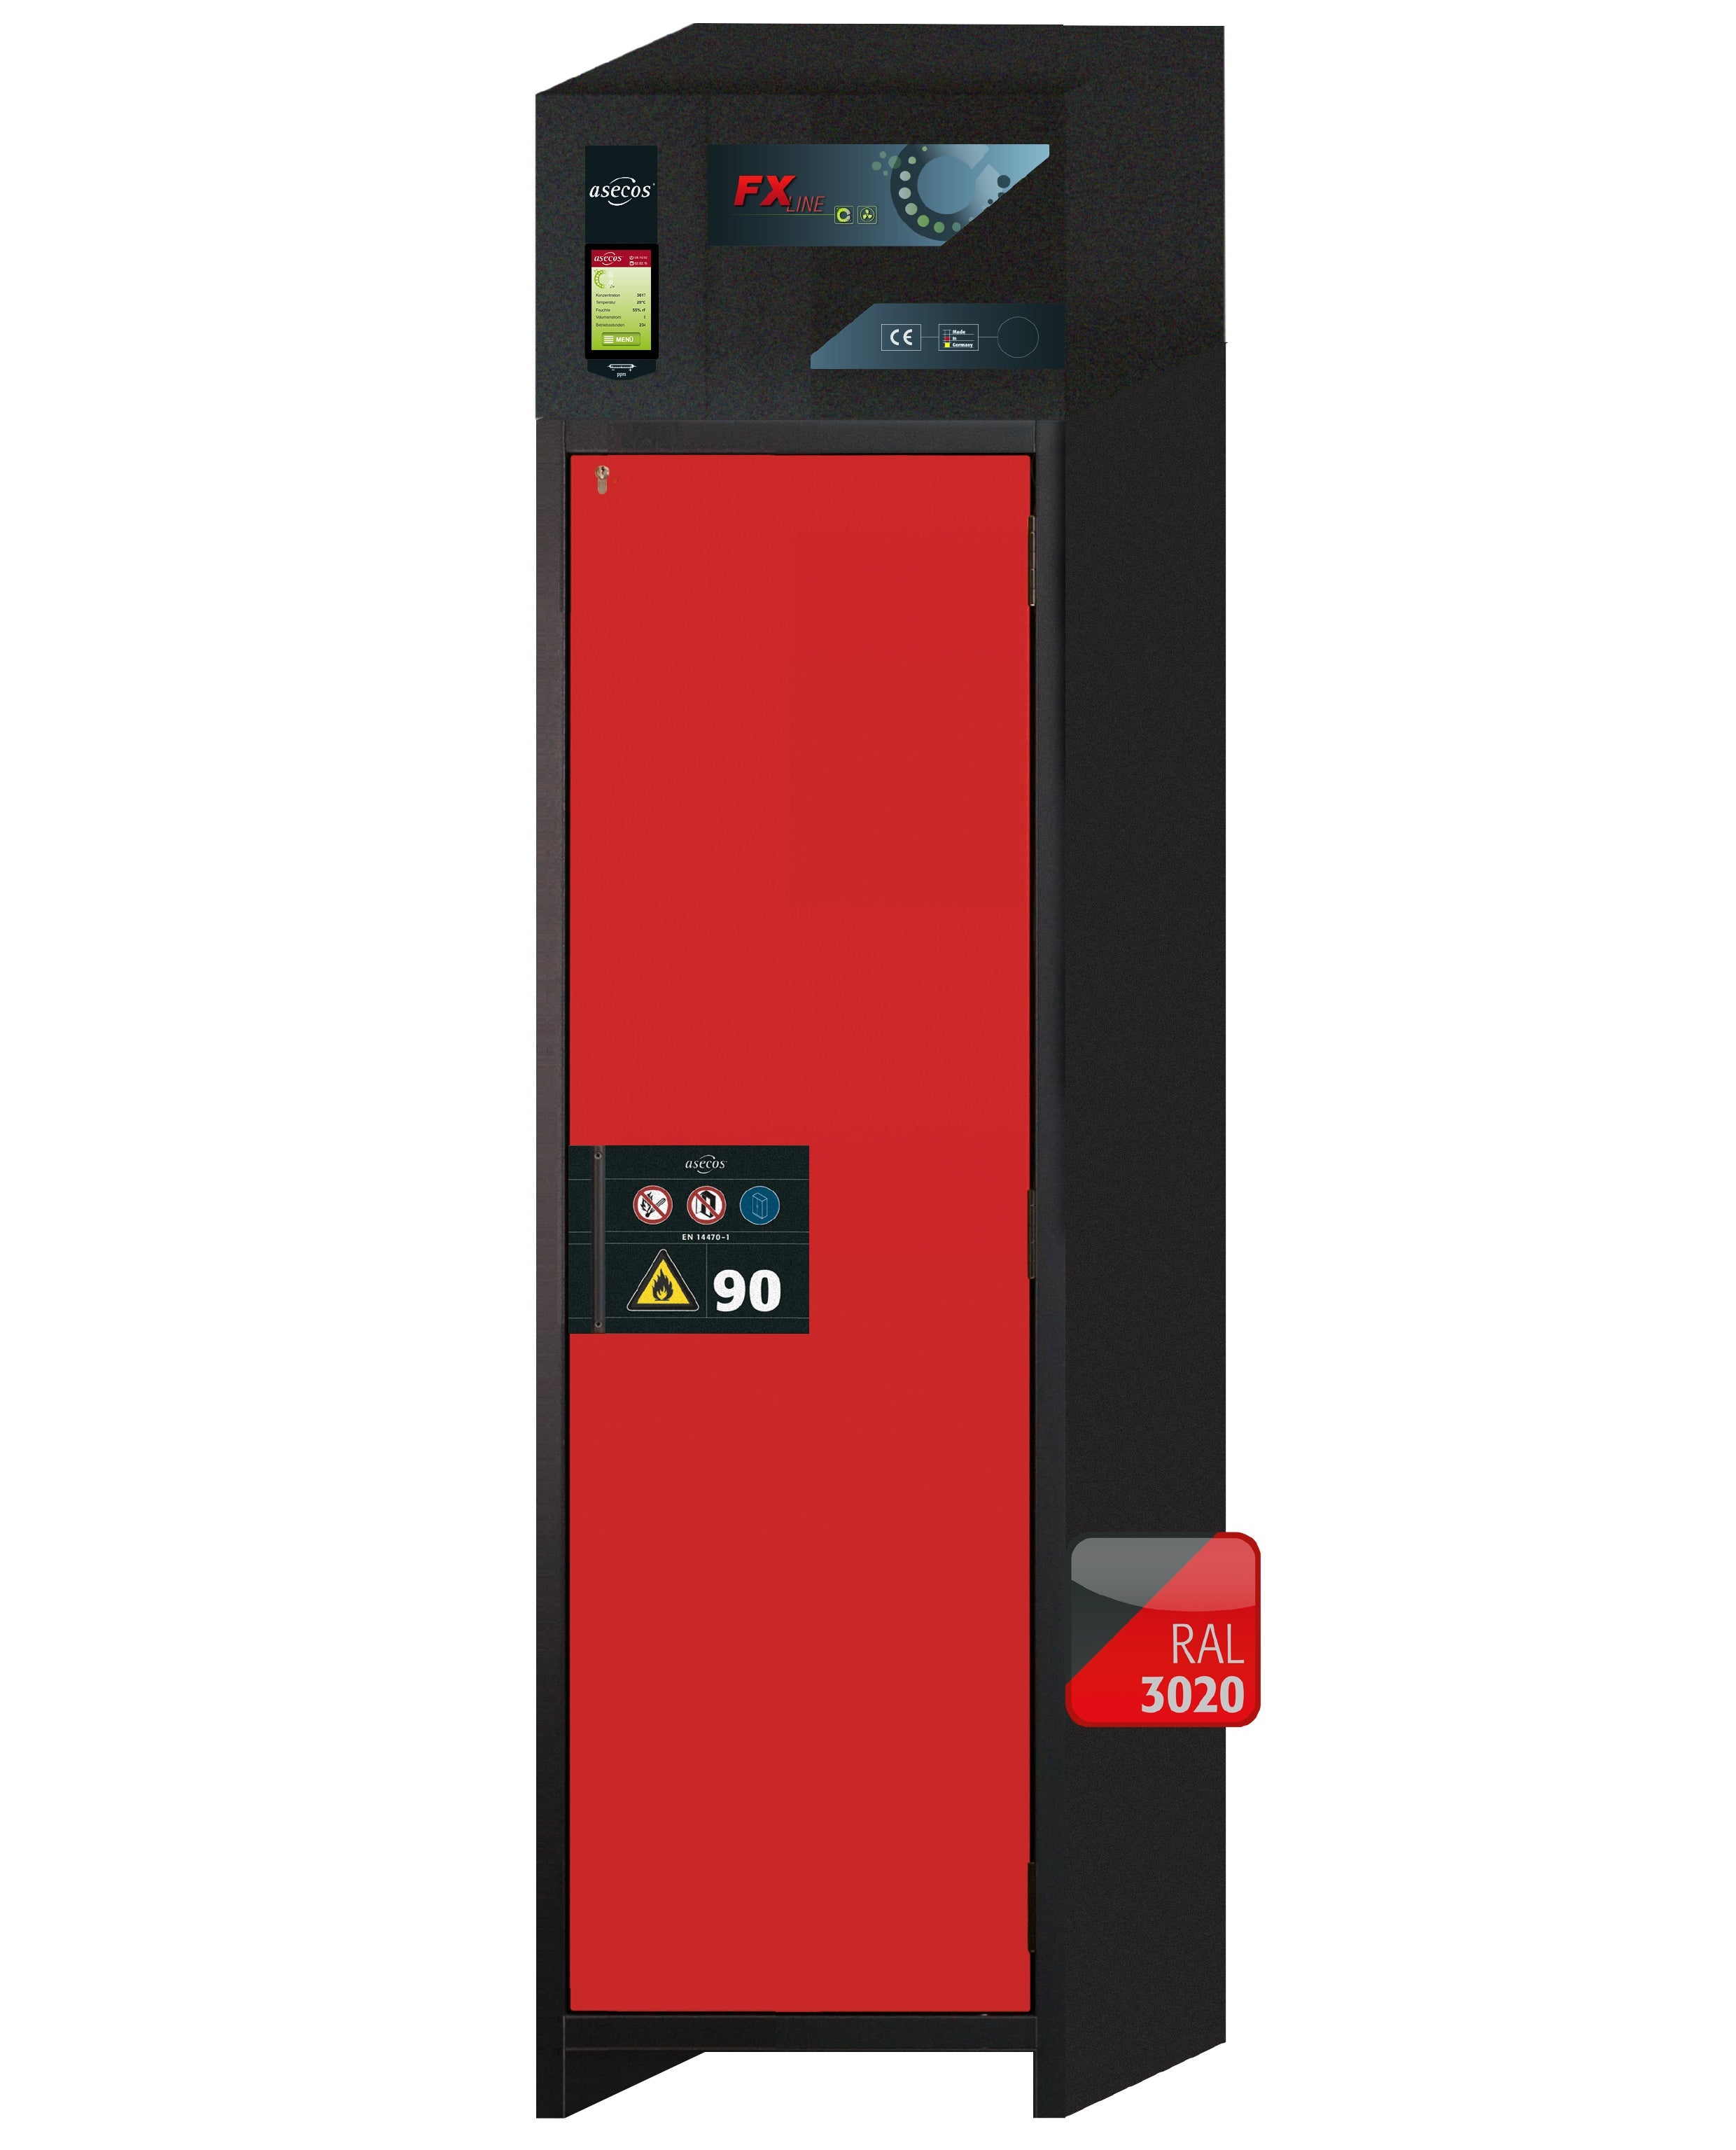 Armoire de filtration d'air recyclé type 90 FX-PEGASUS-90 modèle FX90.229.060.WDACR en rouge signalisation RAL 3020 avec 3 plateaux coulissants standard (acier inoxydable 1.4301)